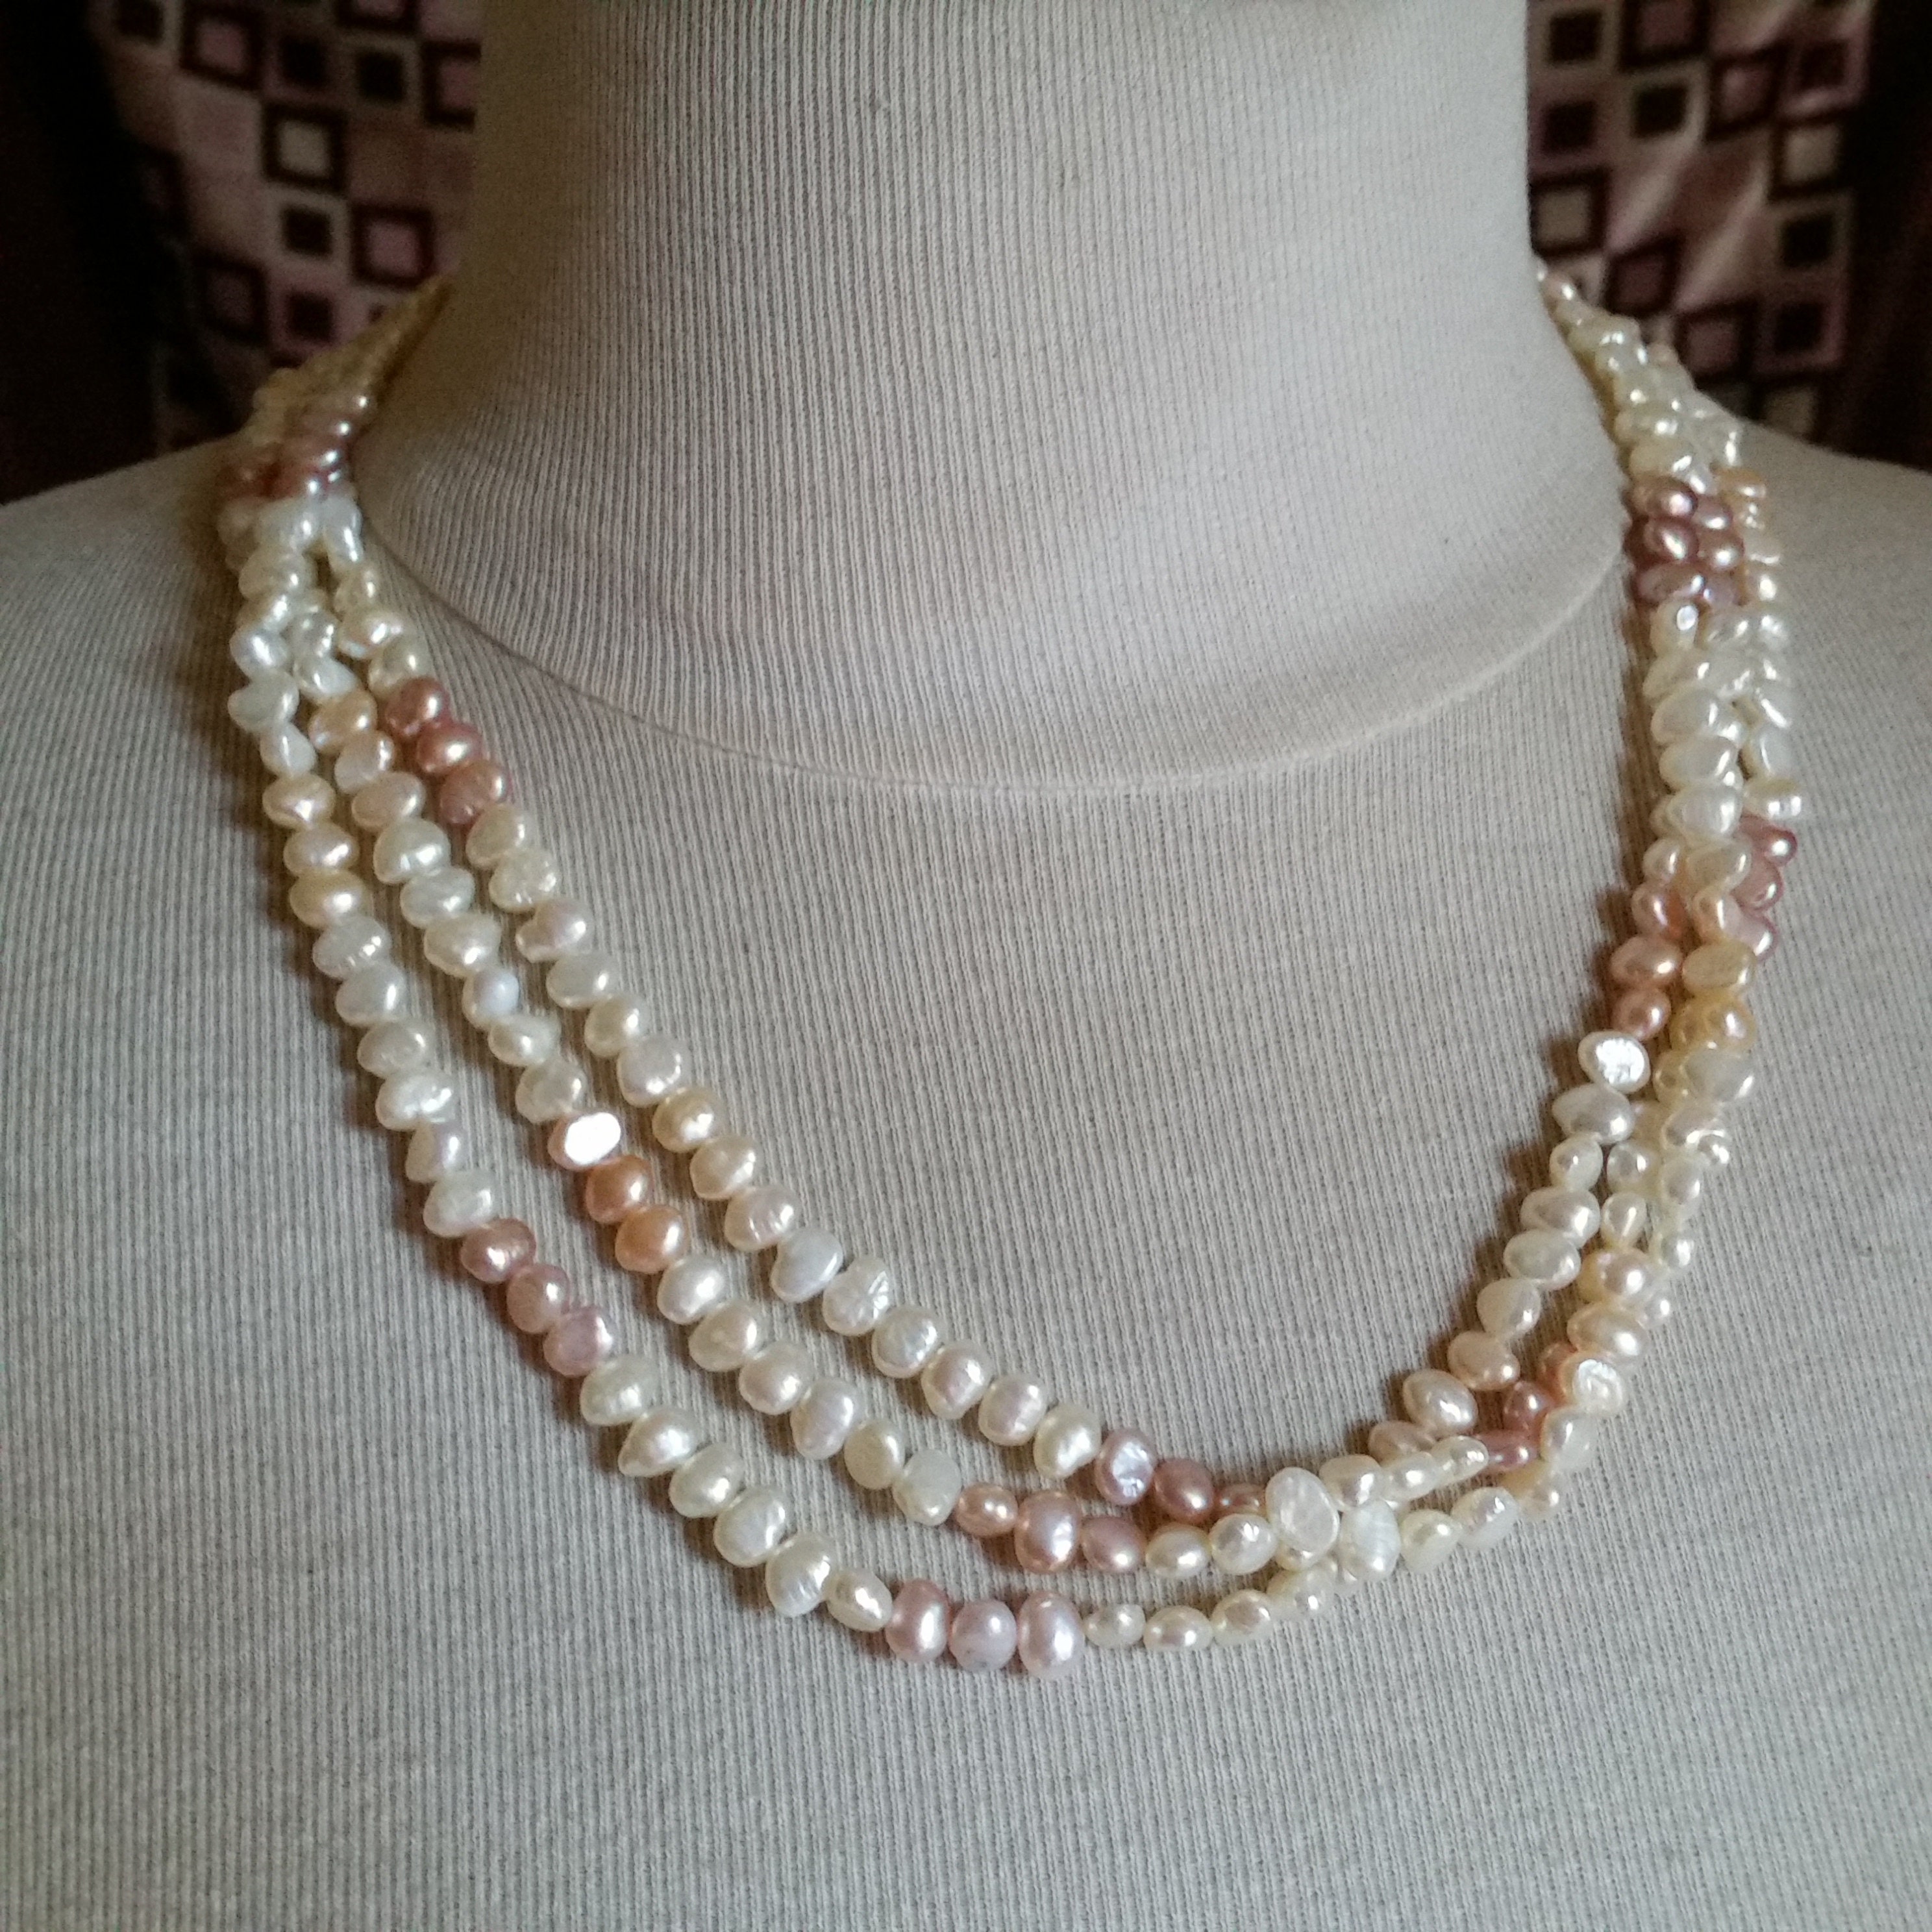 430 Perles bayadères - perles plastique rayées rondes Ø 16mm, assortiment  1kg